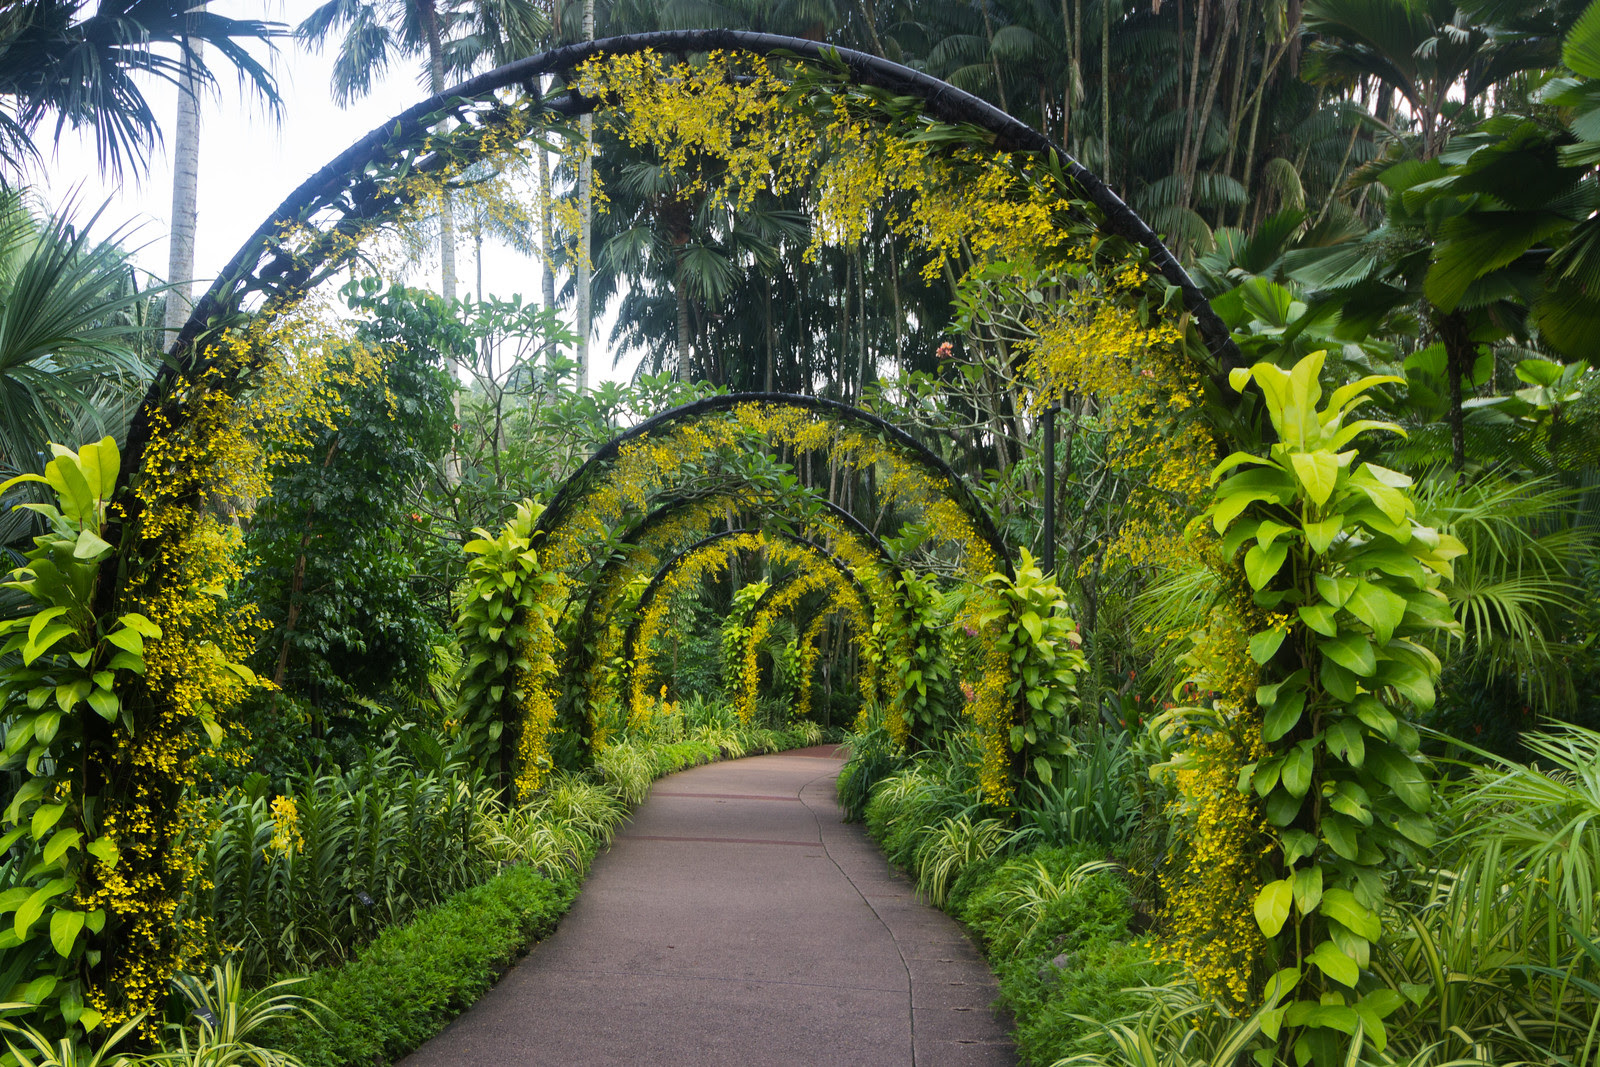 At Singapore Botanic Gardens